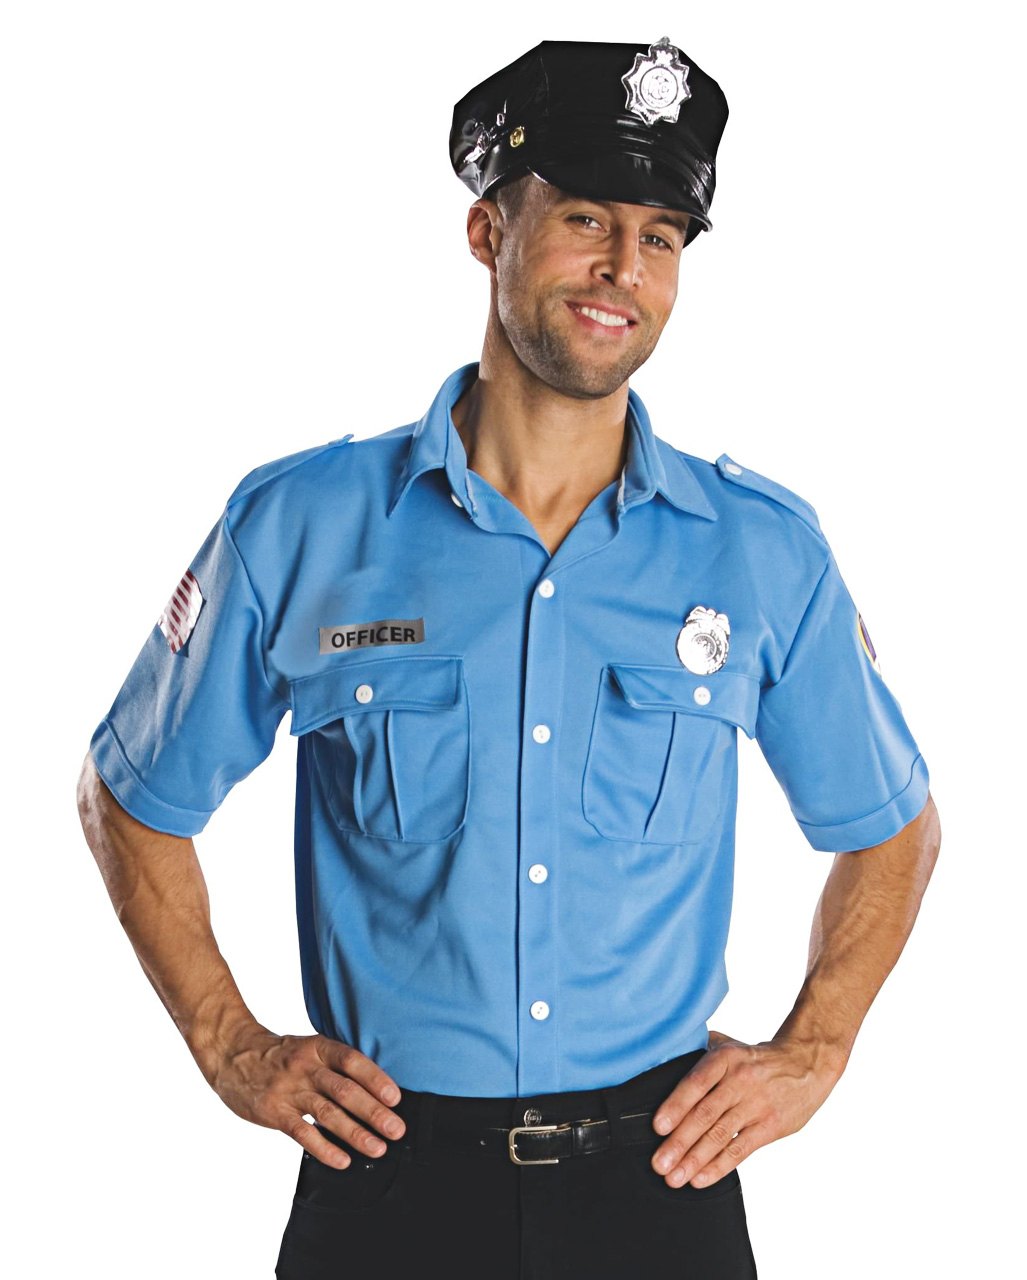 Police Officer Men´s Costume